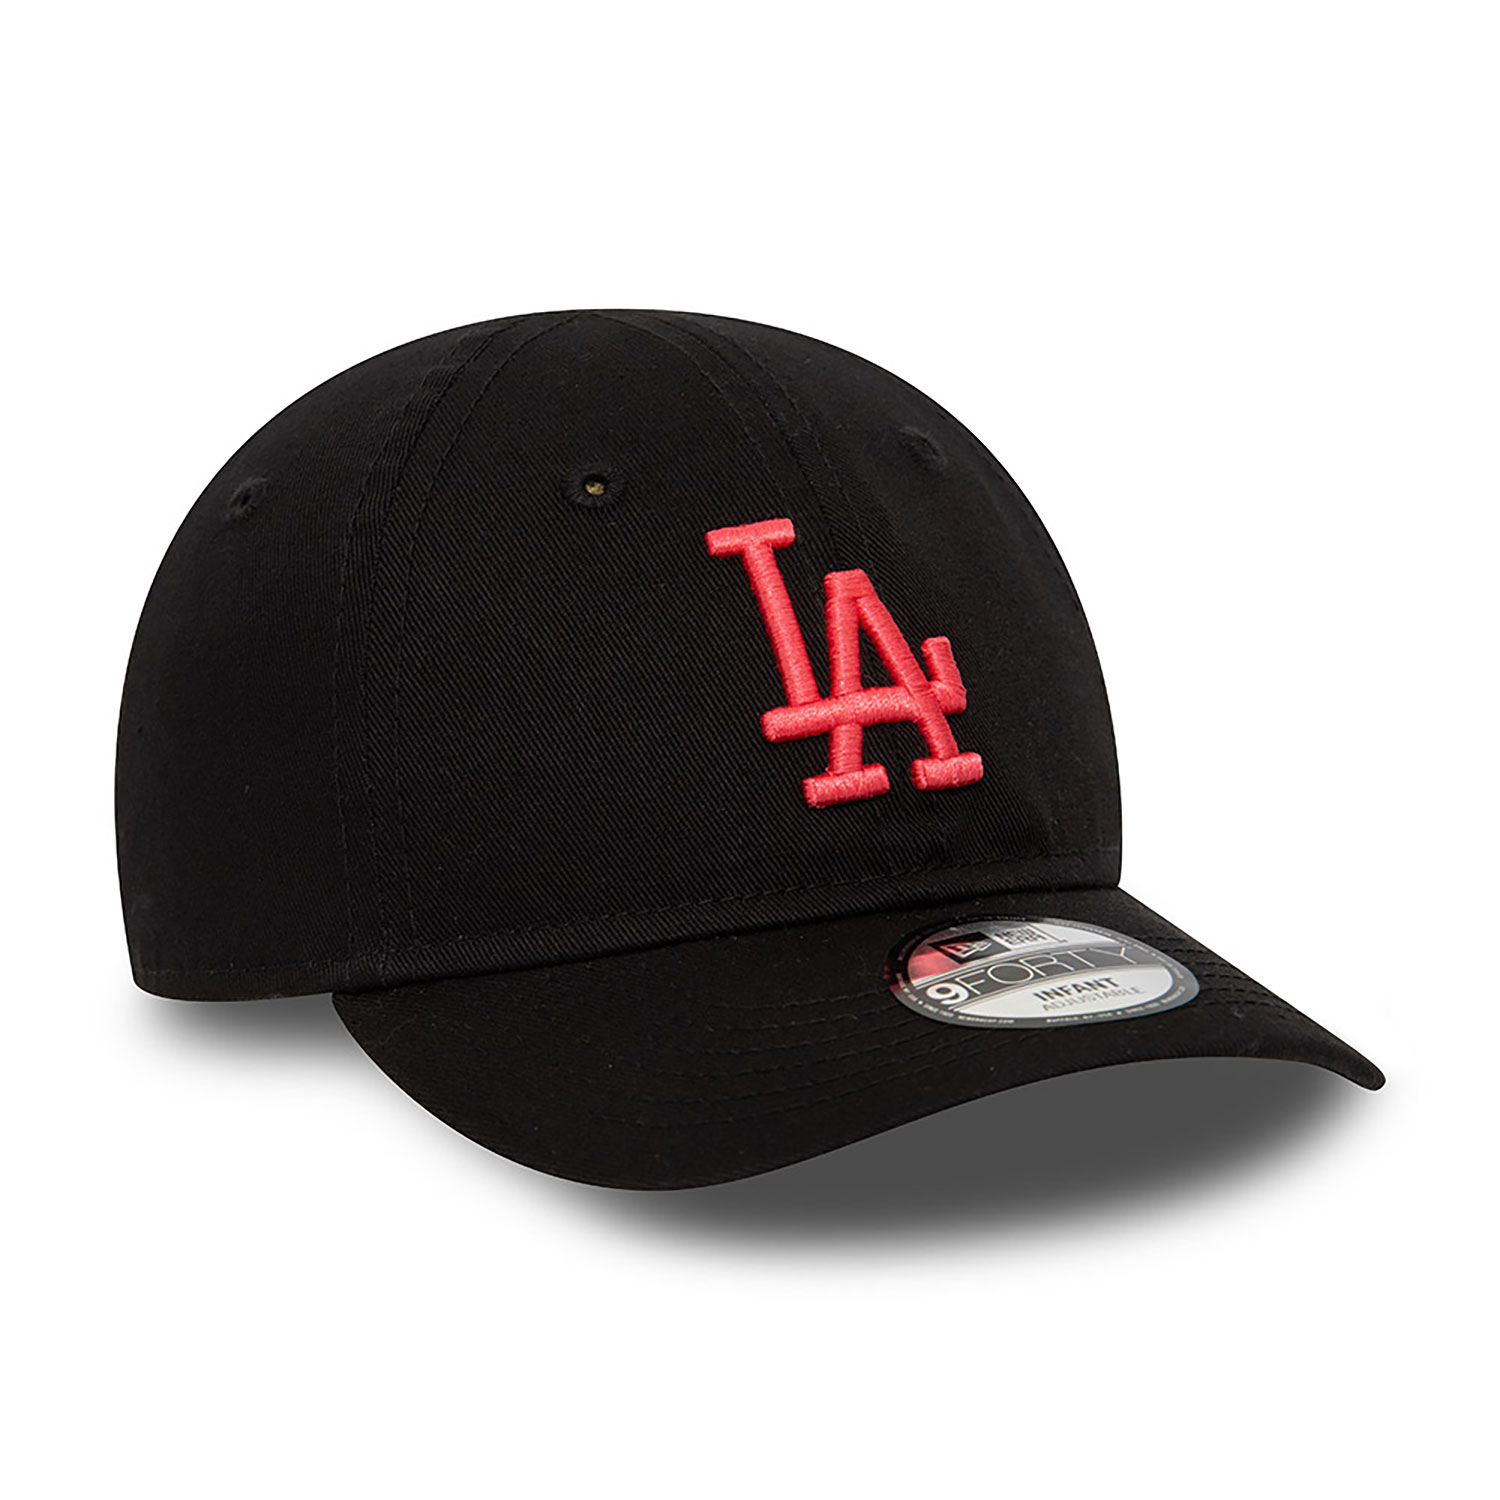 LA Dodgers Infant League Essential Black 9FORTY Adjustable Cap